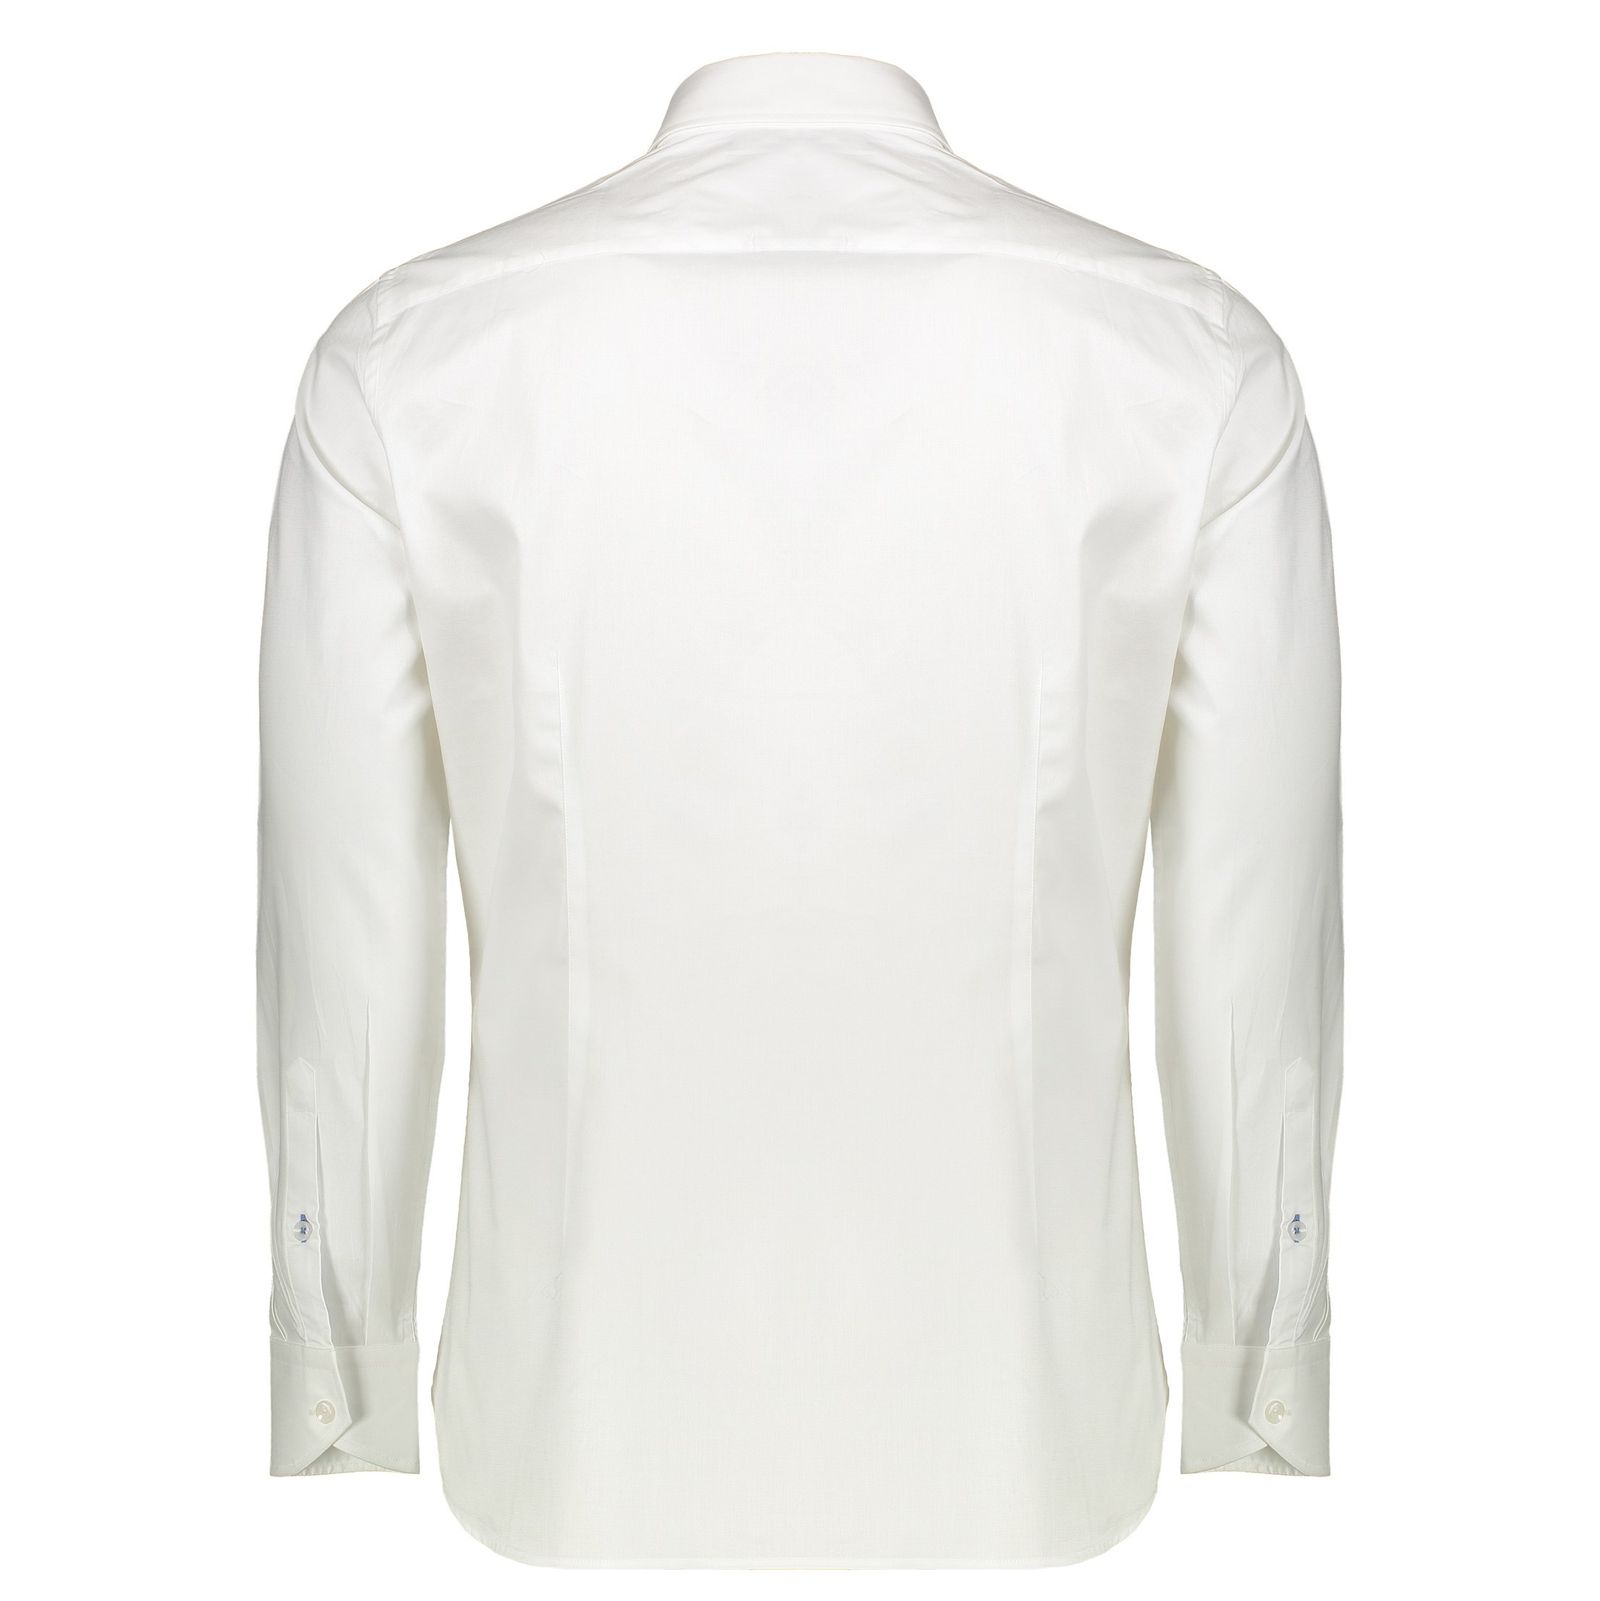 پیراهن رسمی مردانه - مانگو - سفيد - 7